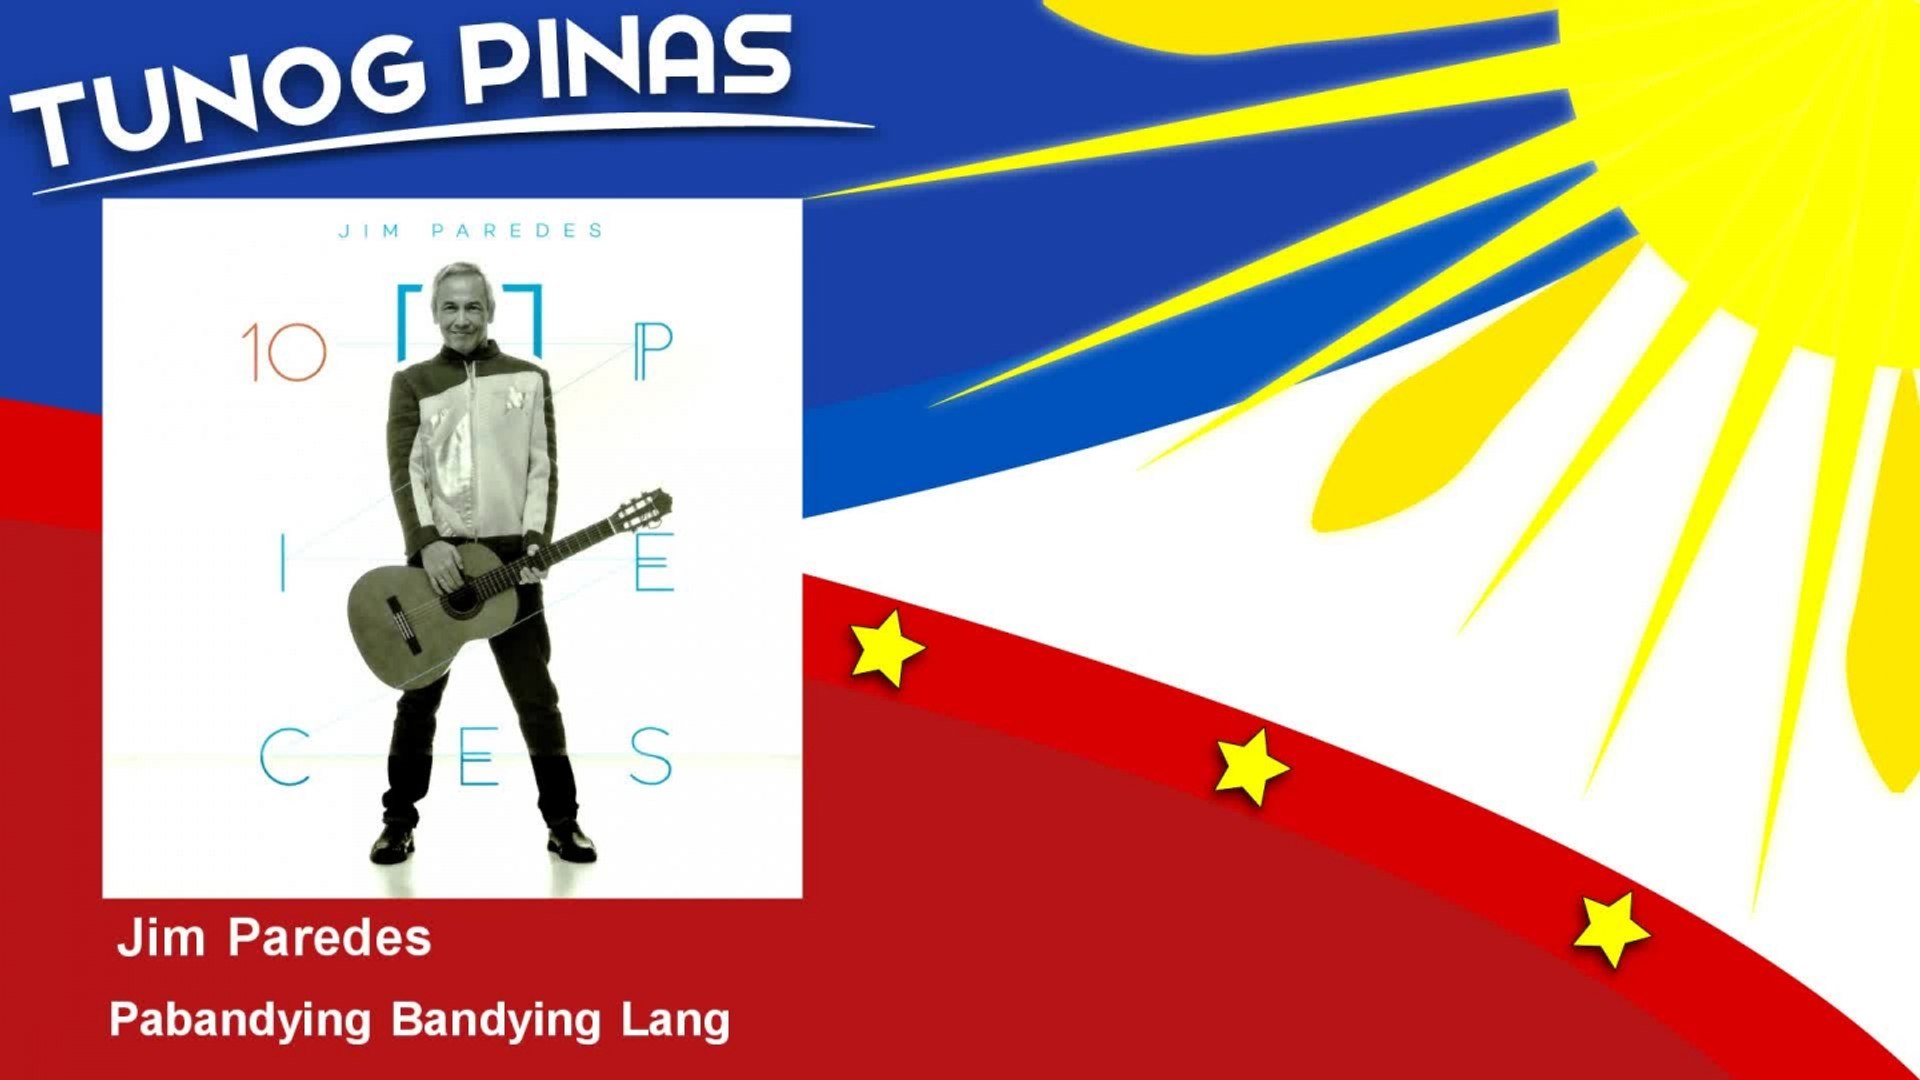 Jim Paredes - Pabandying Bandying Lang - feat. Noel Cabangon, Boboy Garrovillo